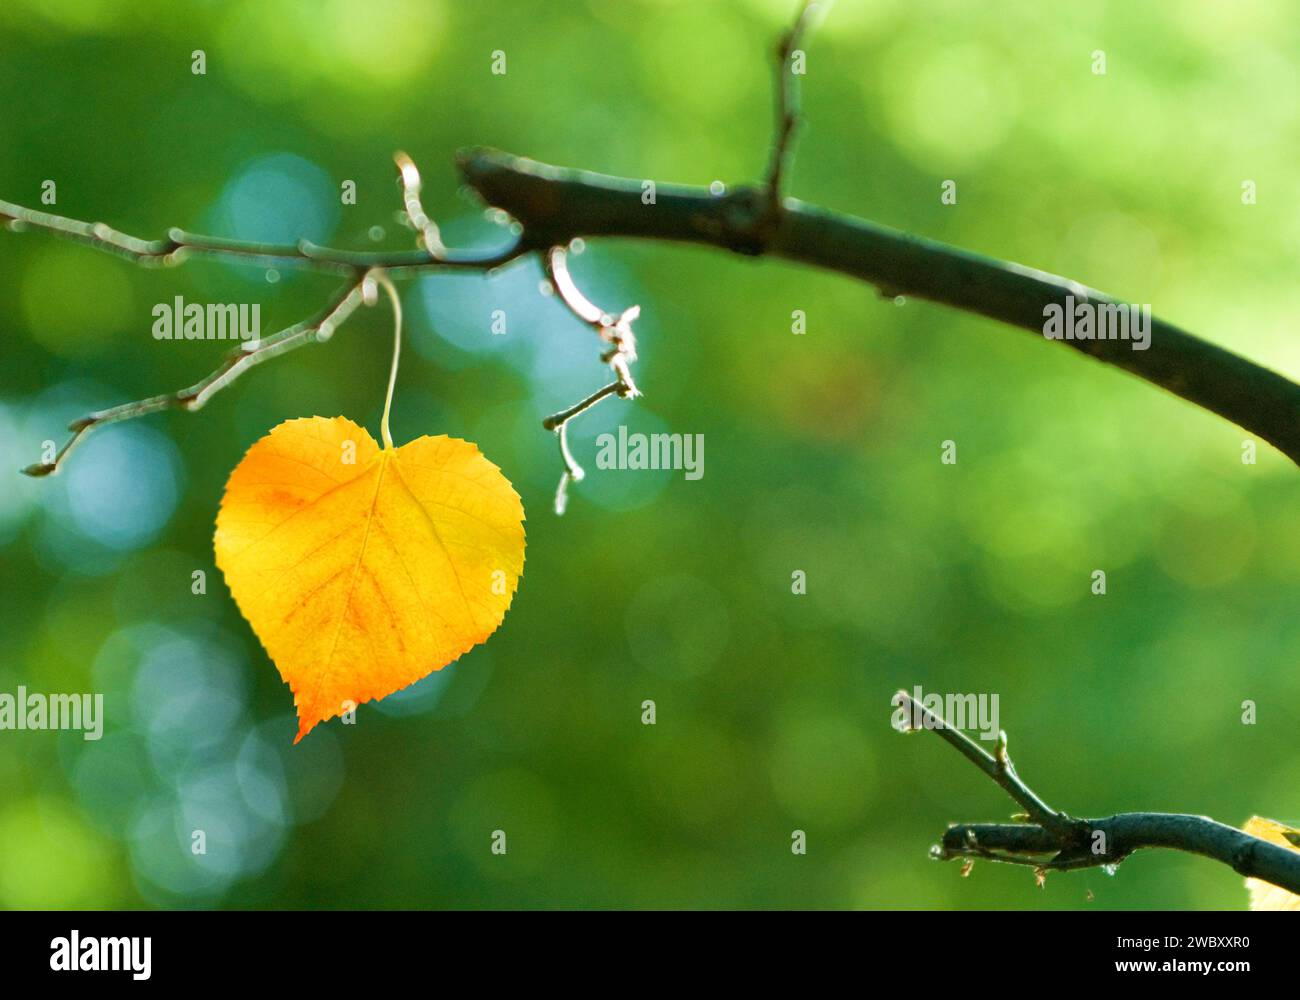 Gros plan d'une feuille d'un citron vert à petites feuilles (Tilia cordata) en forme de coeur Banque D'Images